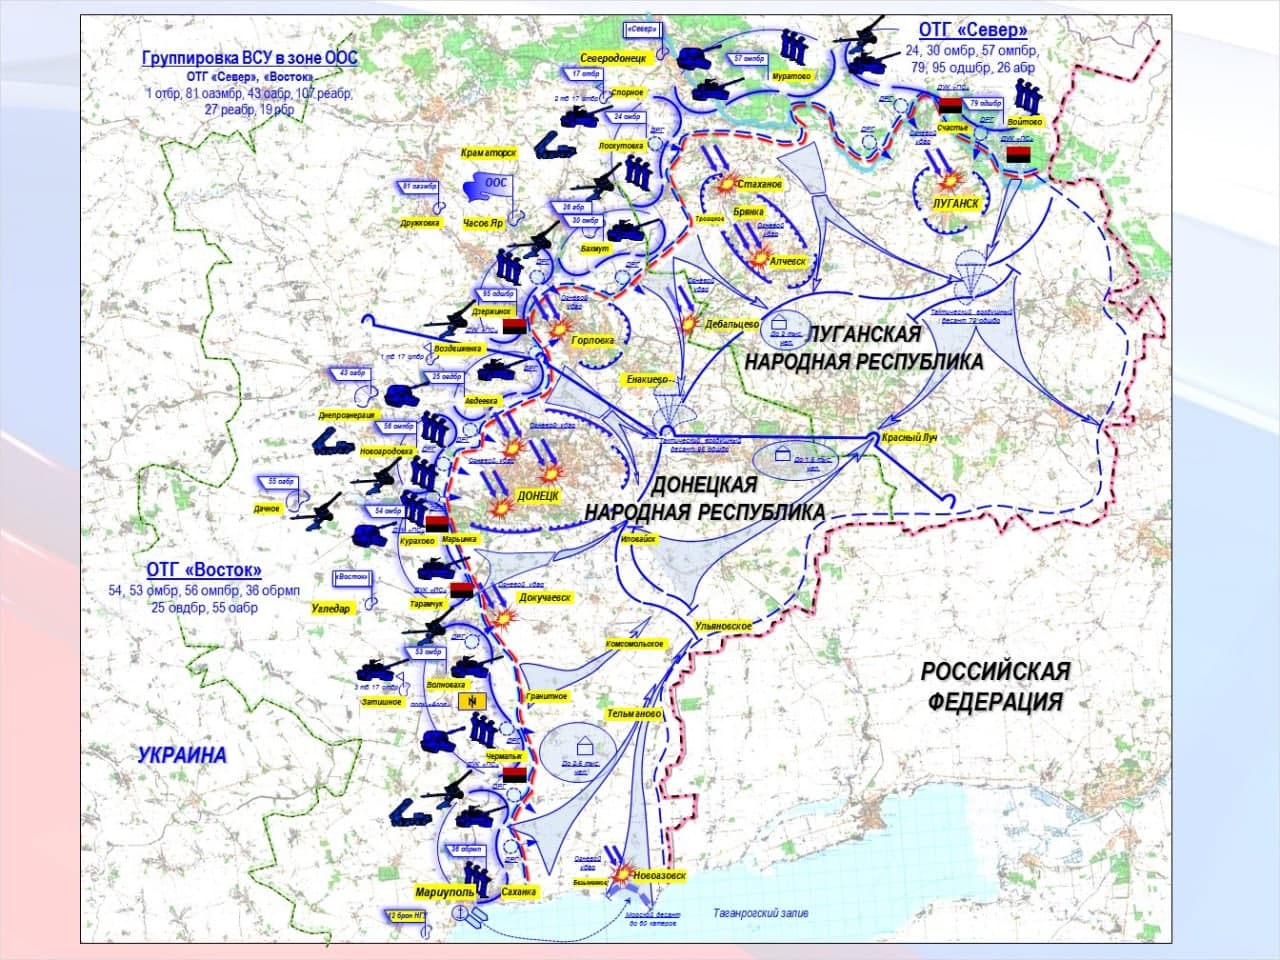 В ДНР раздобыли план наступления ВСУ на Донбасс - Басурин